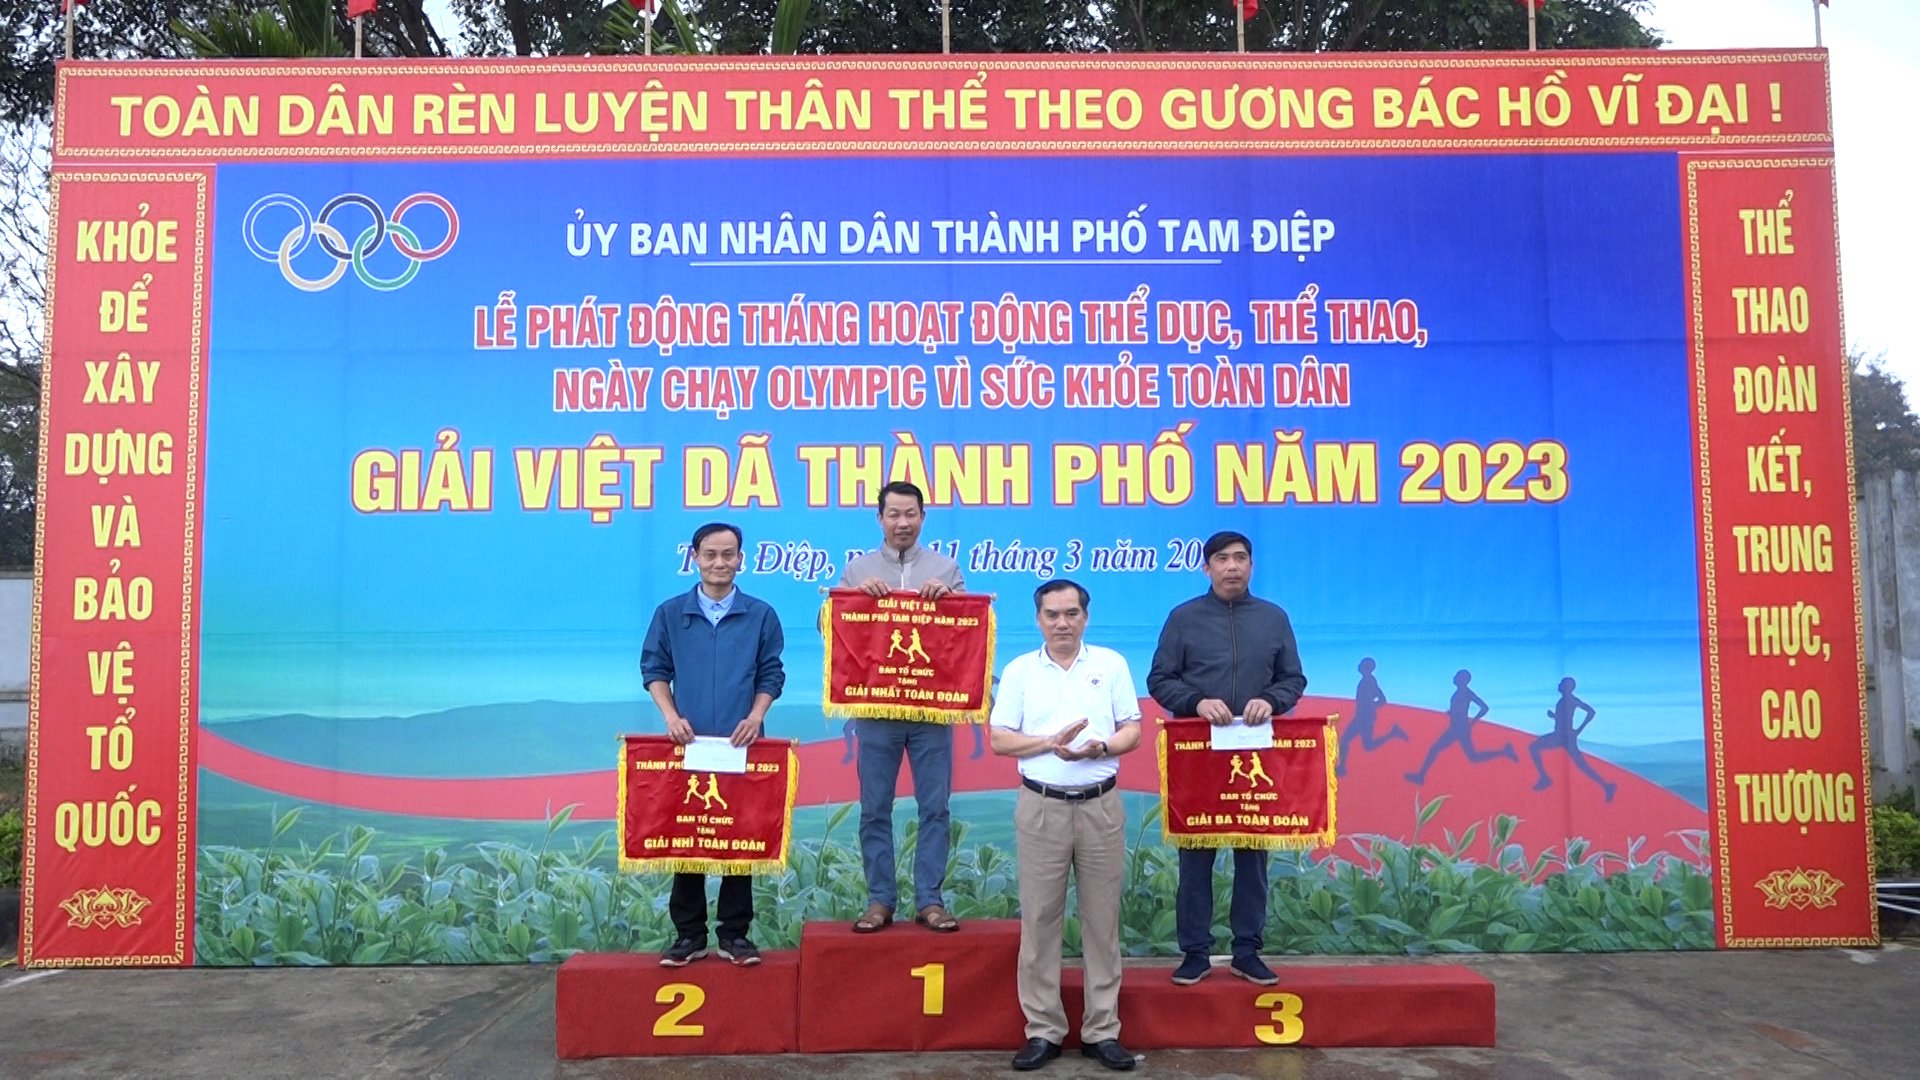 Đội tuyển Việt dã phường Bắc Sơn tham gia giải Việt dã thành phố Tam Điệp năm 2023